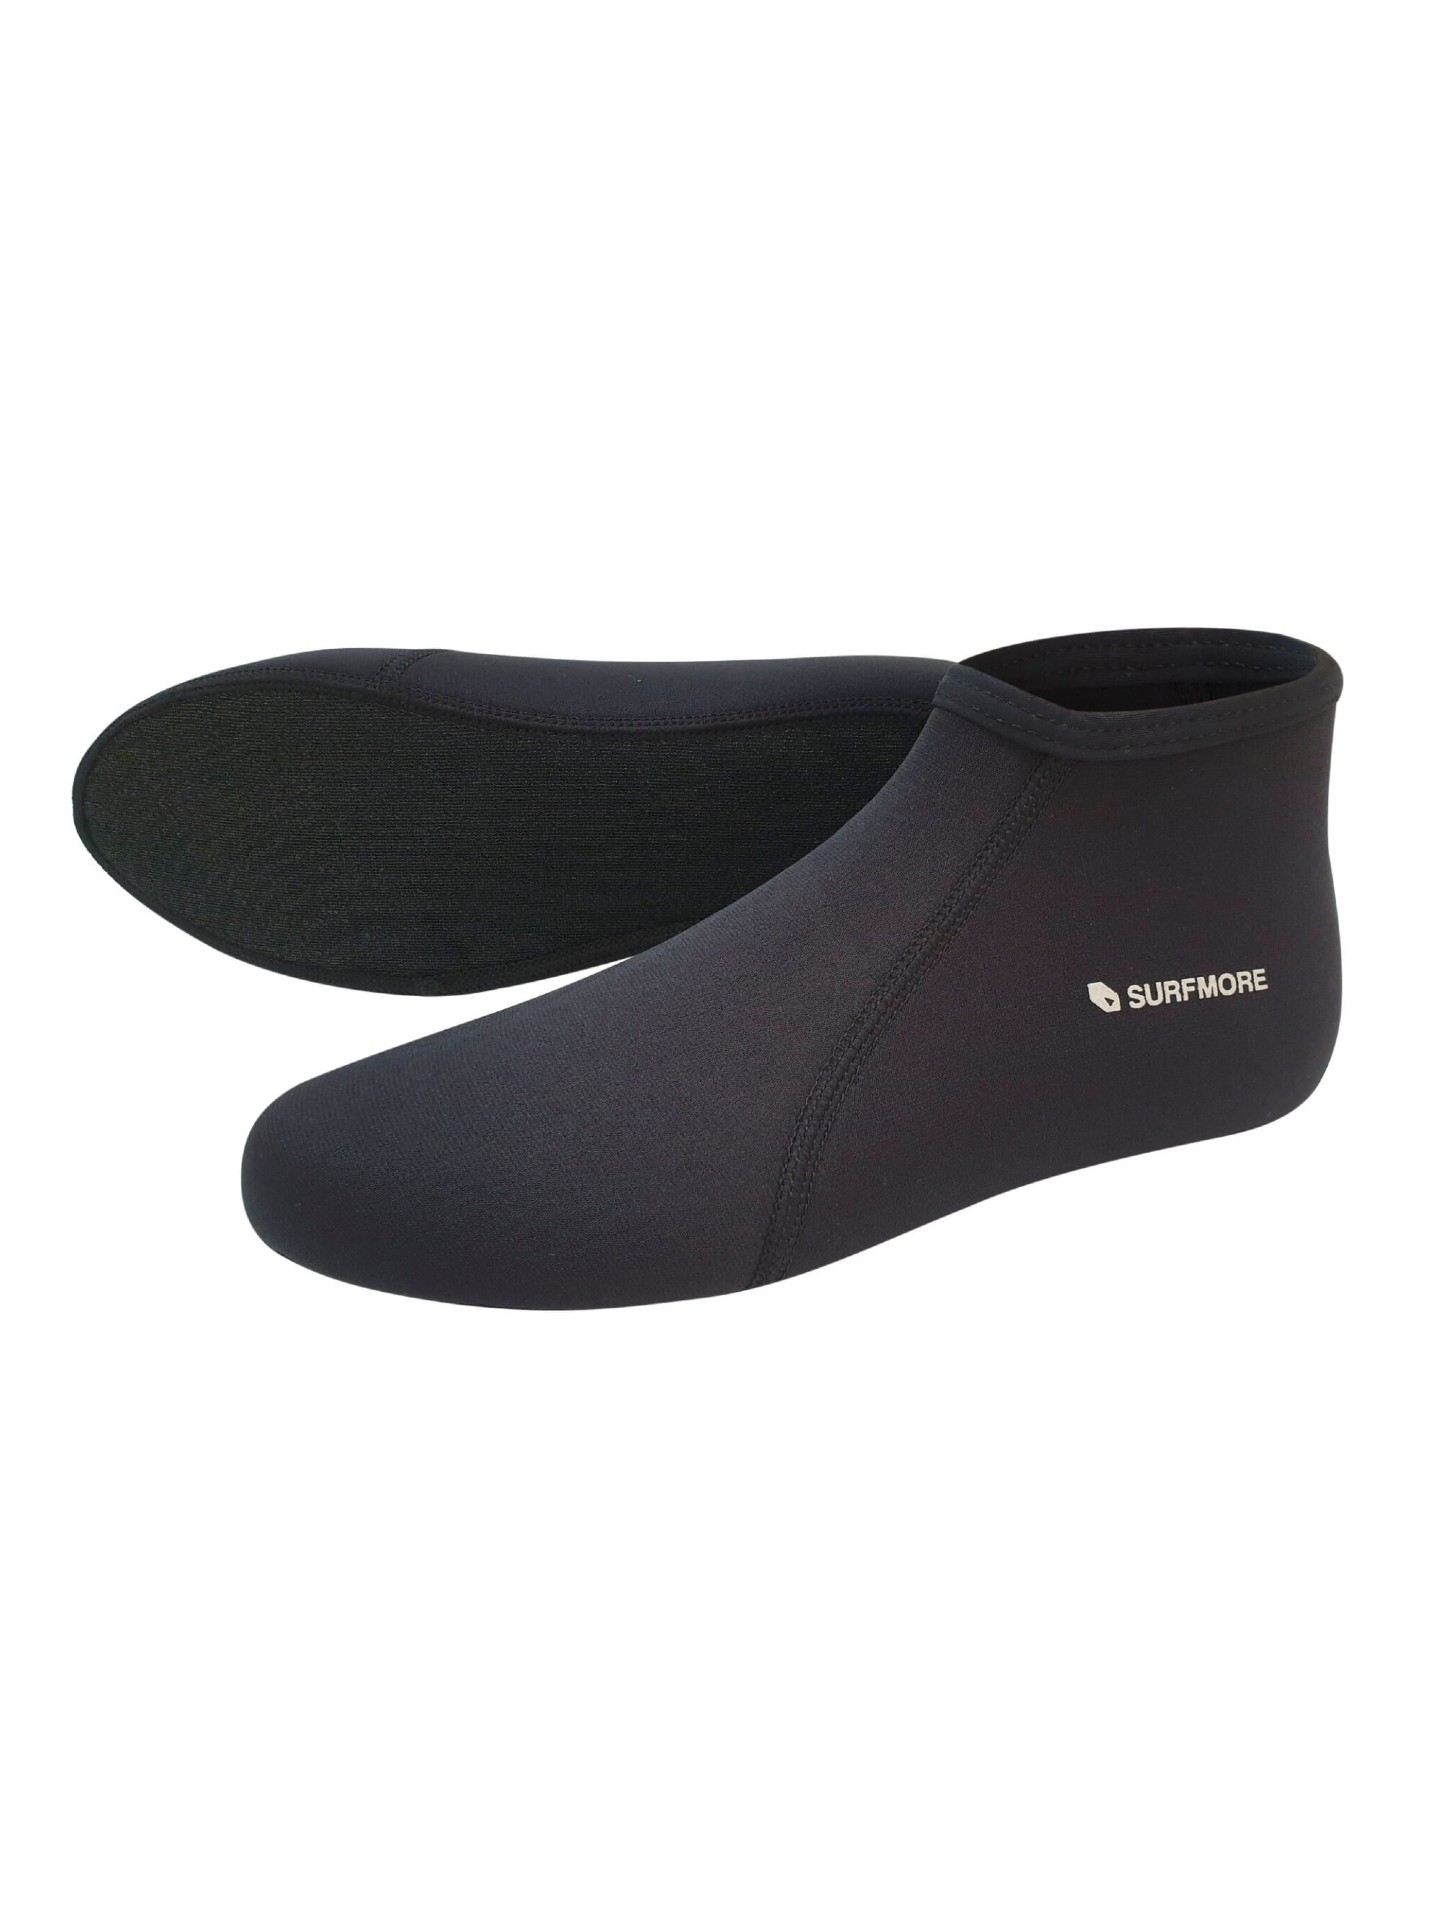 surfmore-neopren-sokker-3mm